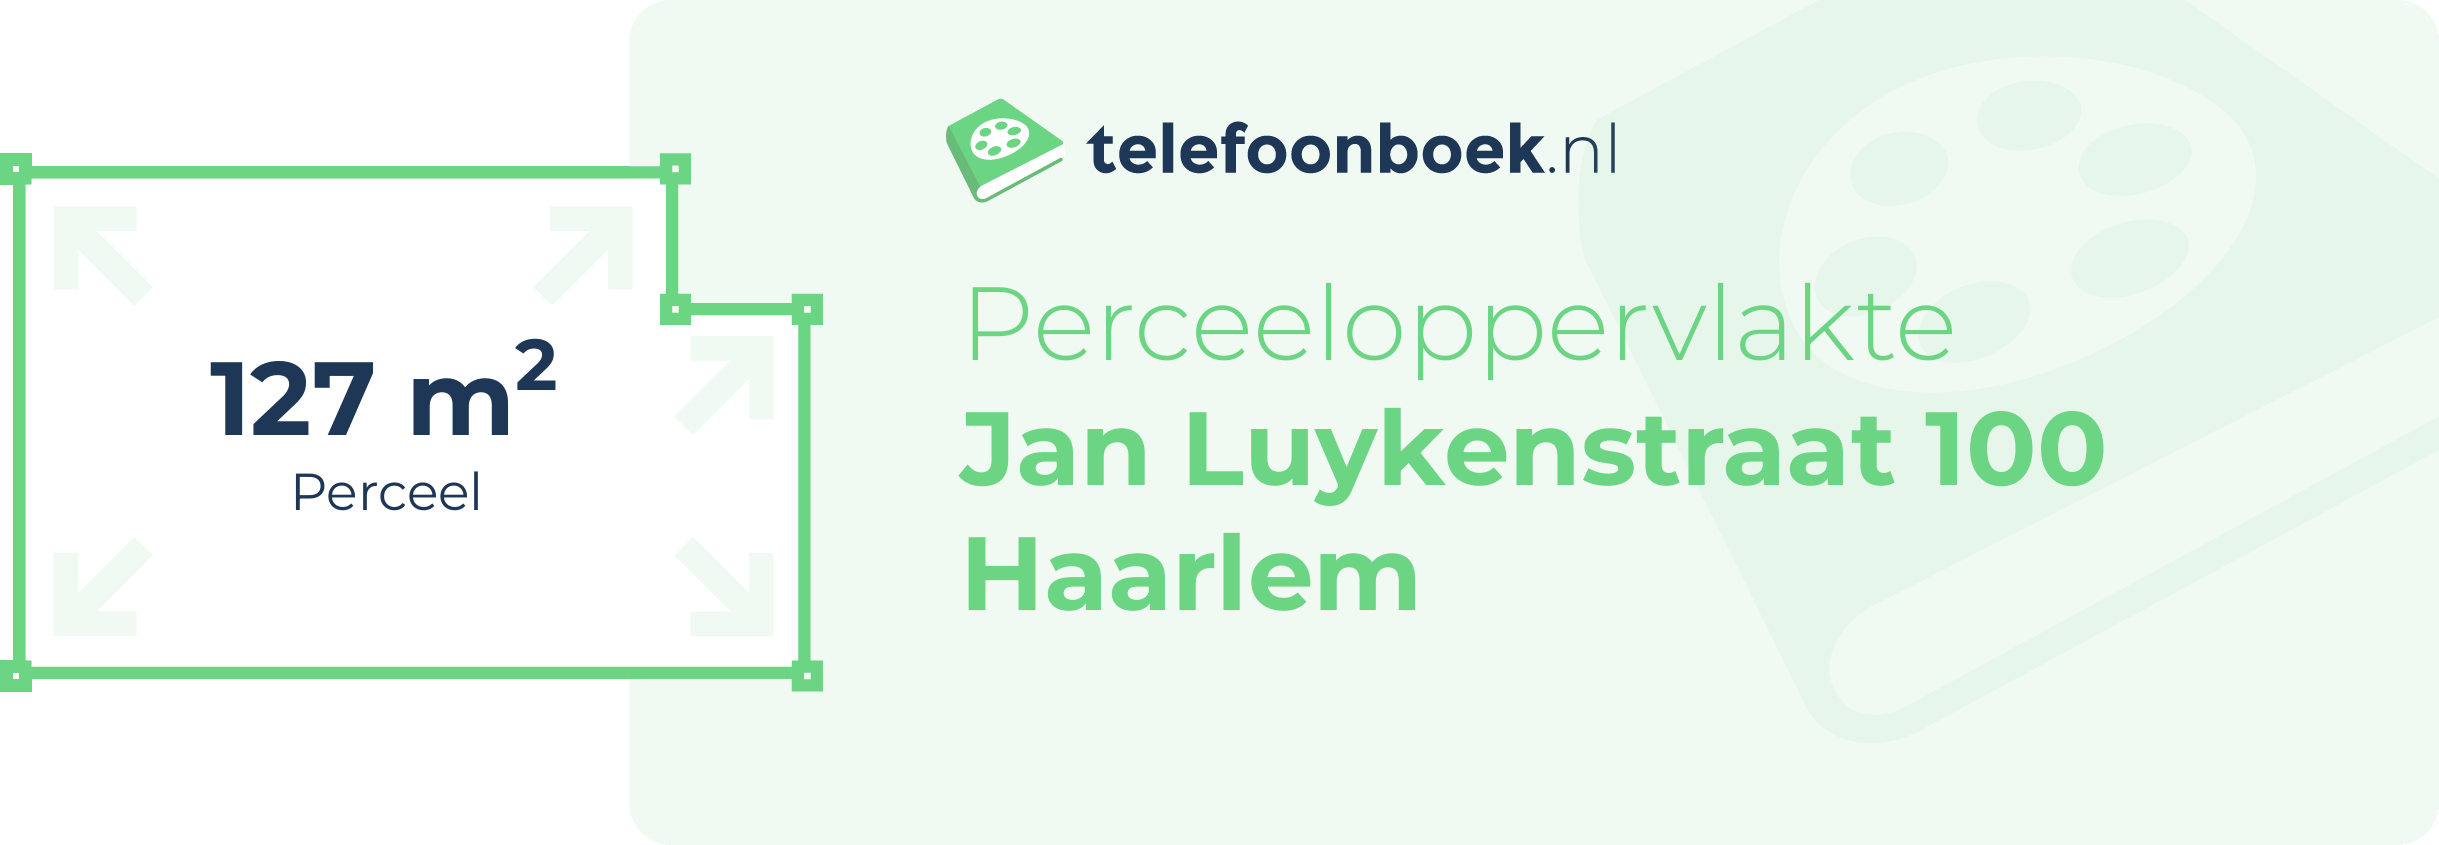 Perceeloppervlakte Jan Luykenstraat 100 Haarlem